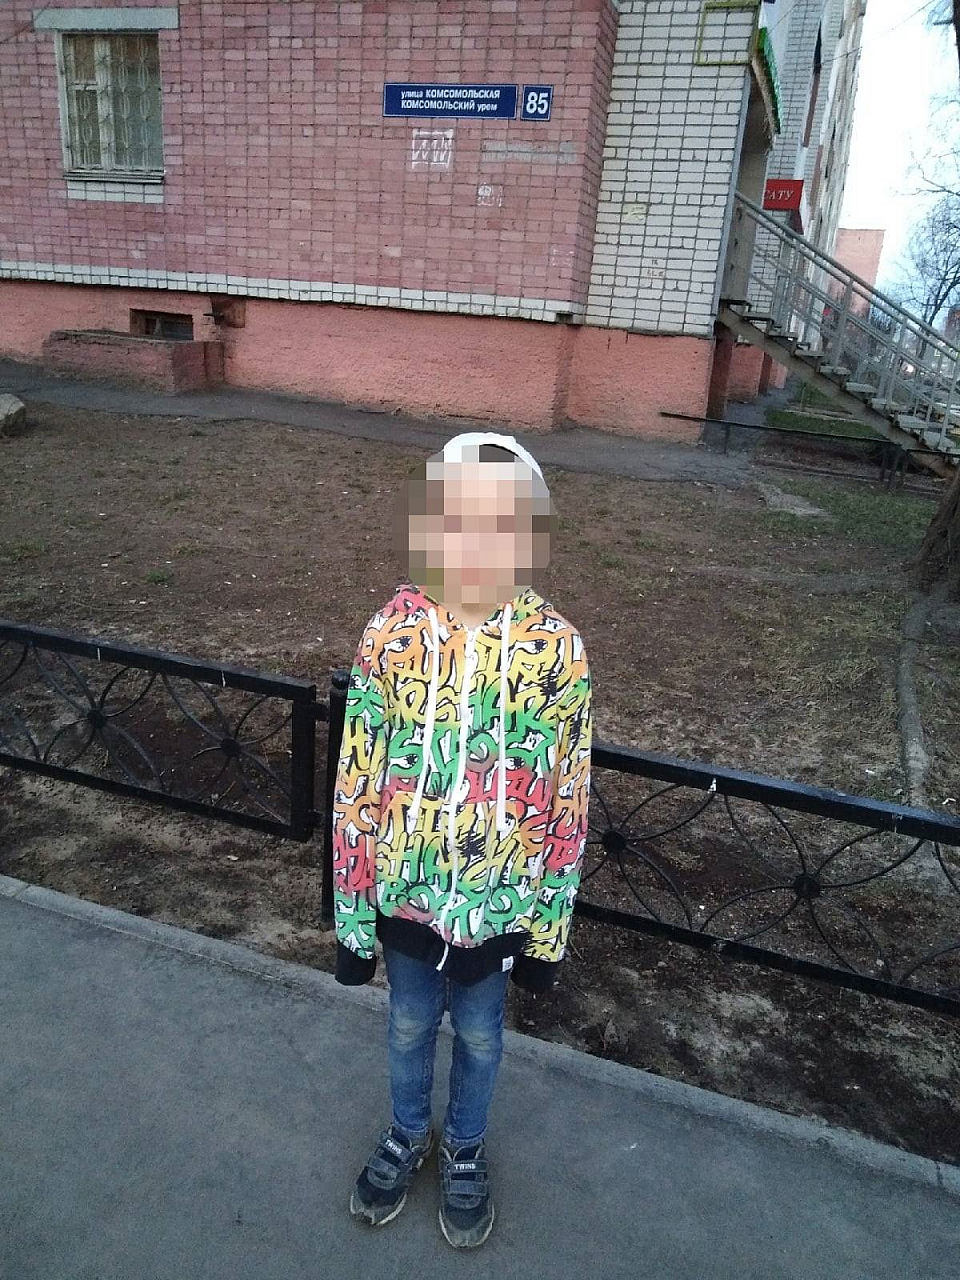 В Йошкар-Оле маленький мальчик пошел погулять и заблудился в чужом городе